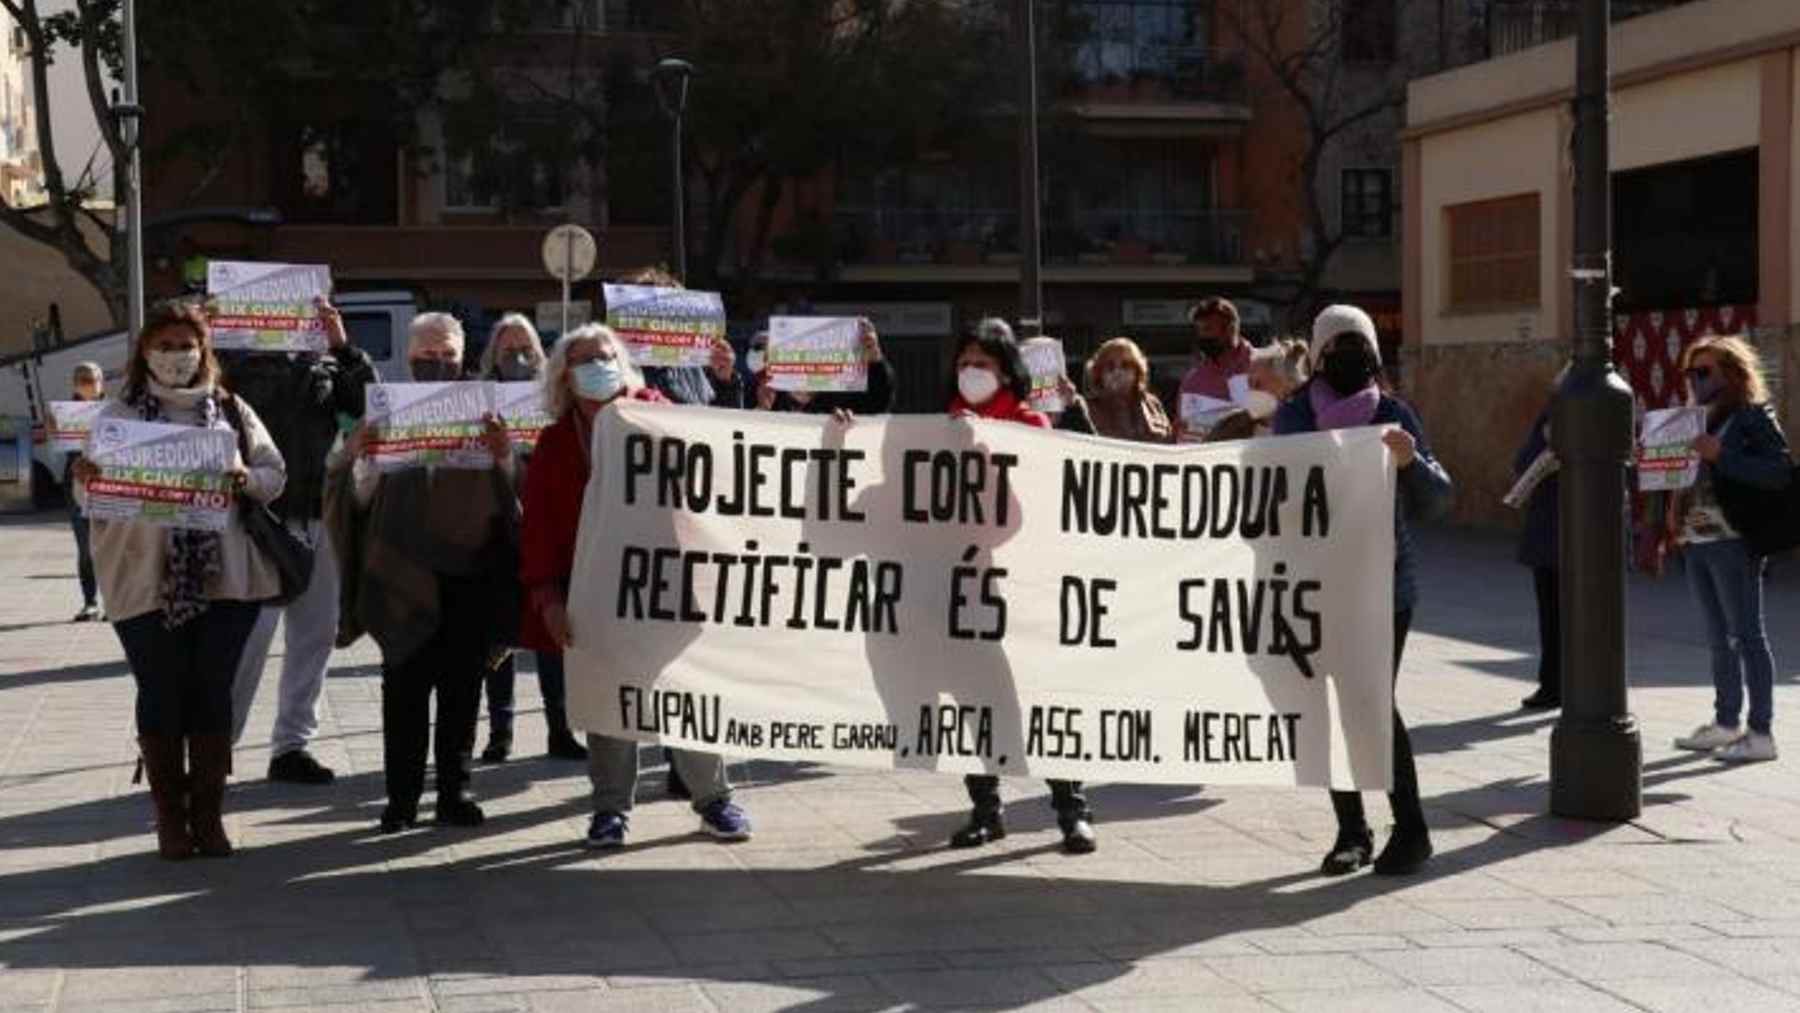 Protesta por la peatonalización de la calle Nuredduna del barrio de Pere Garau. ARCA